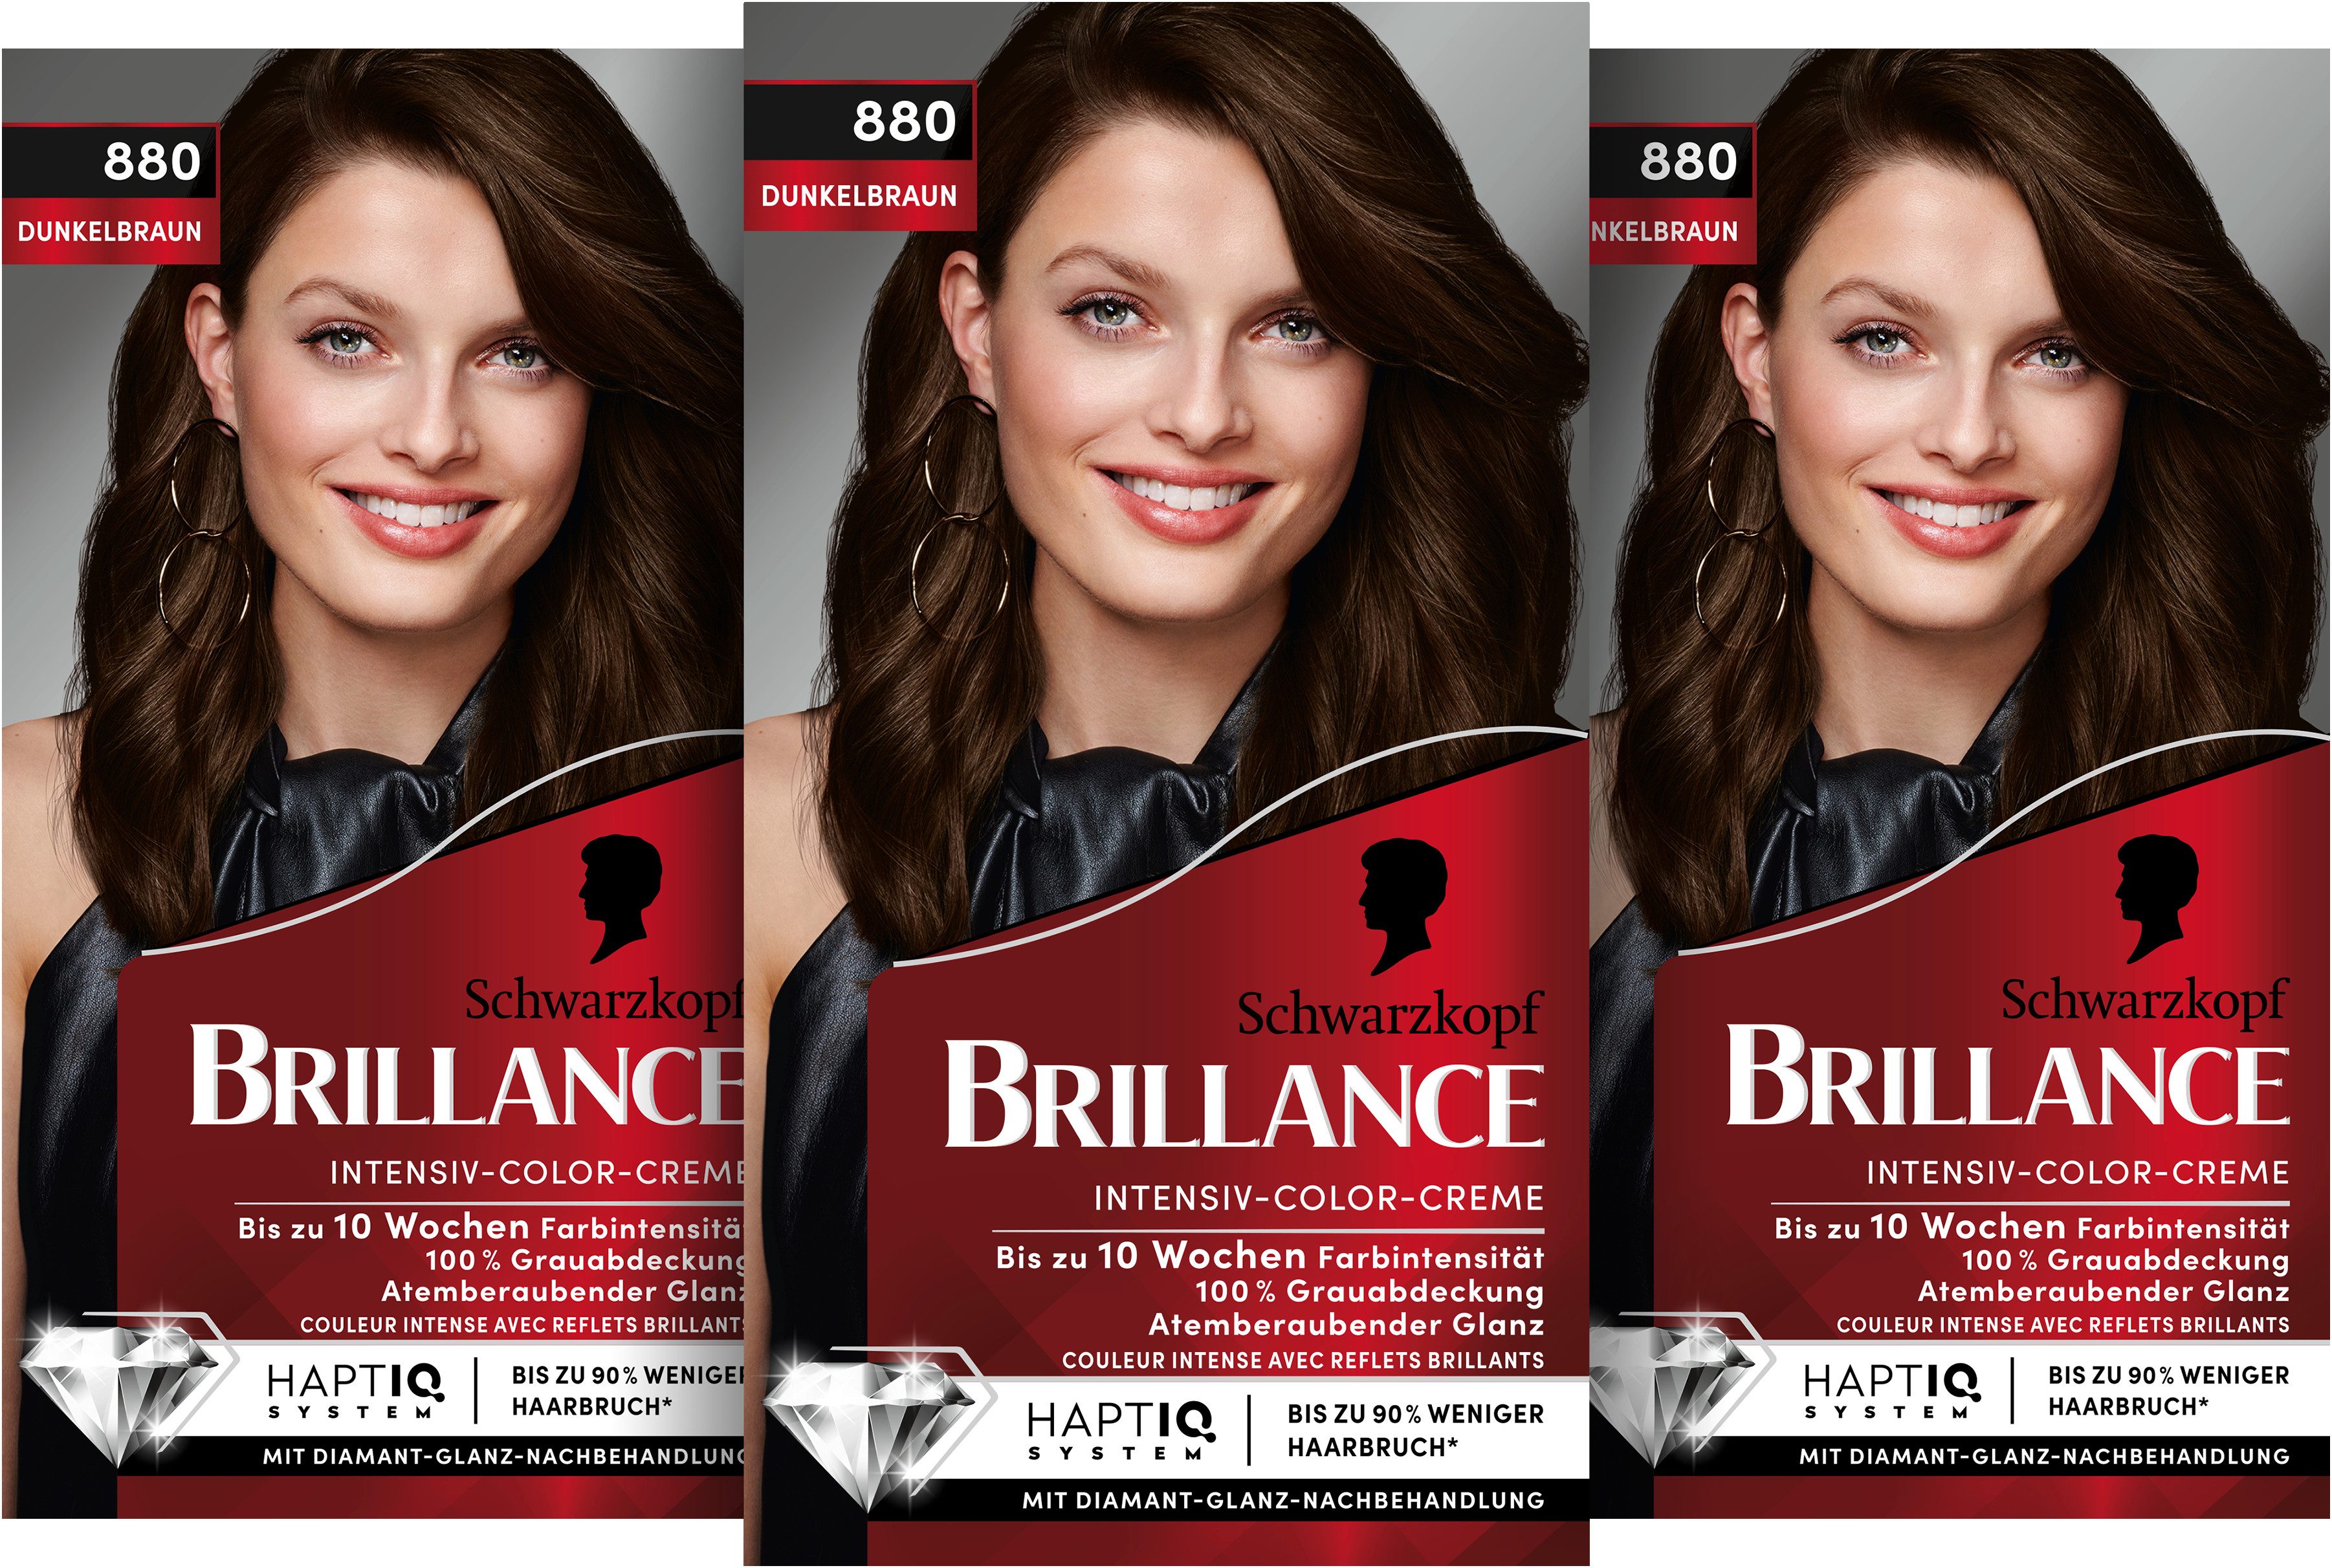 Schwarzkopf Haarfarbe BRILLANCE Intensiv-Color-Creme 880 Dunkelbraun, Spar-Pack, 3-tlg., mit Diamant-Glanz und Pflege-Conditioner, für 10 Wochen Farbintensität